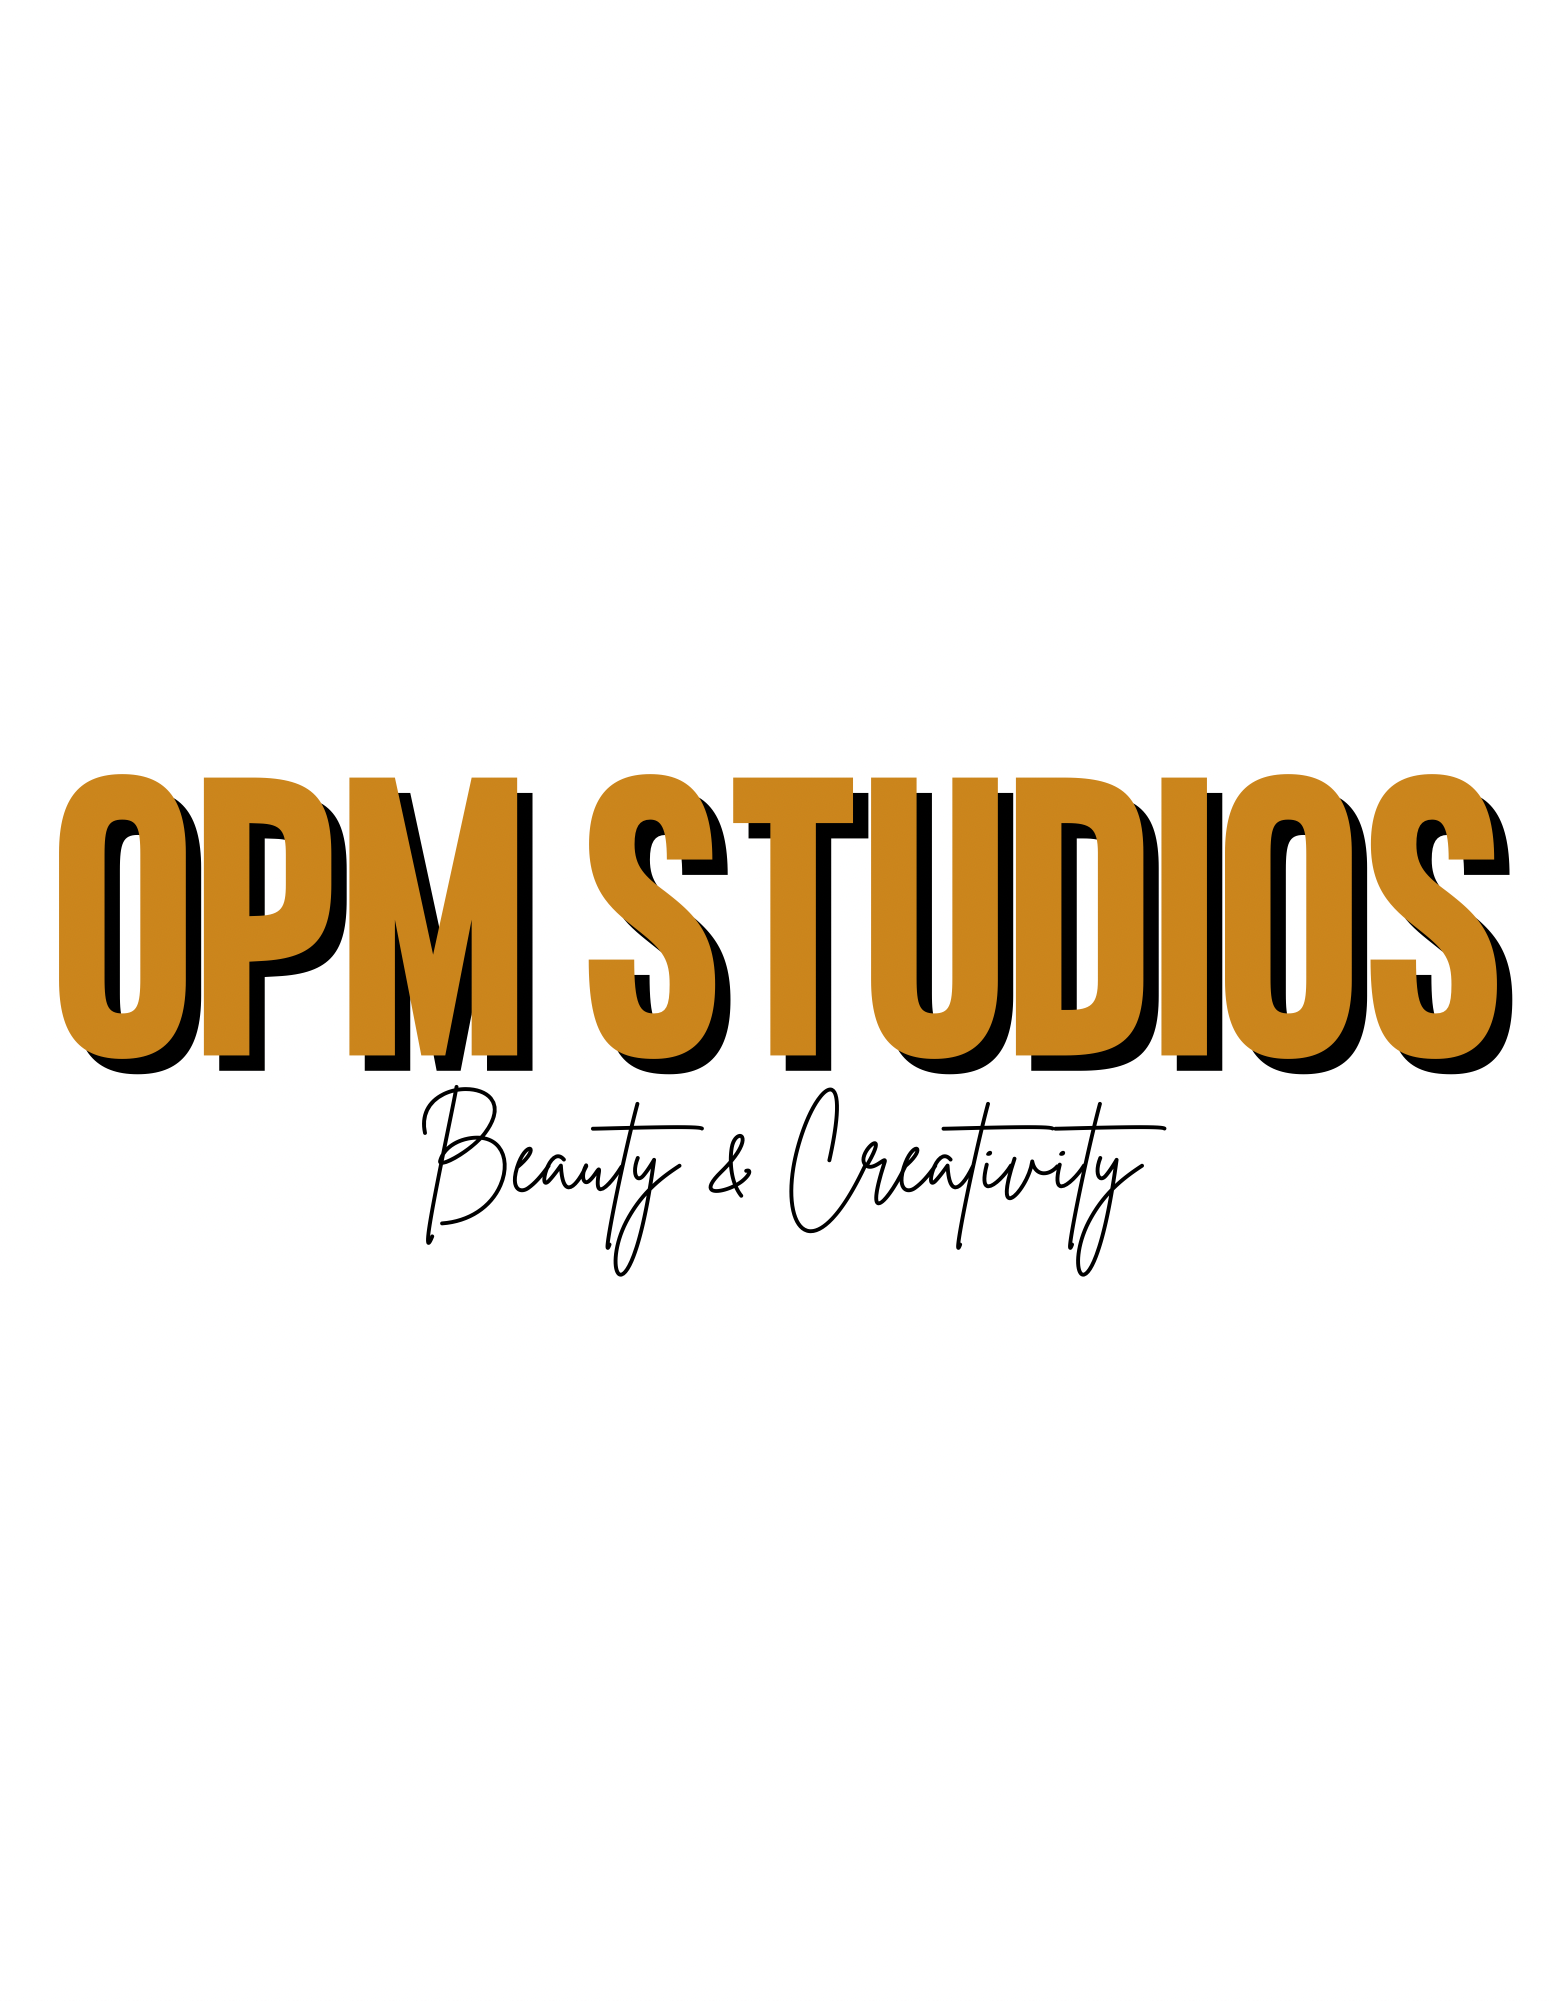 OPM Studios